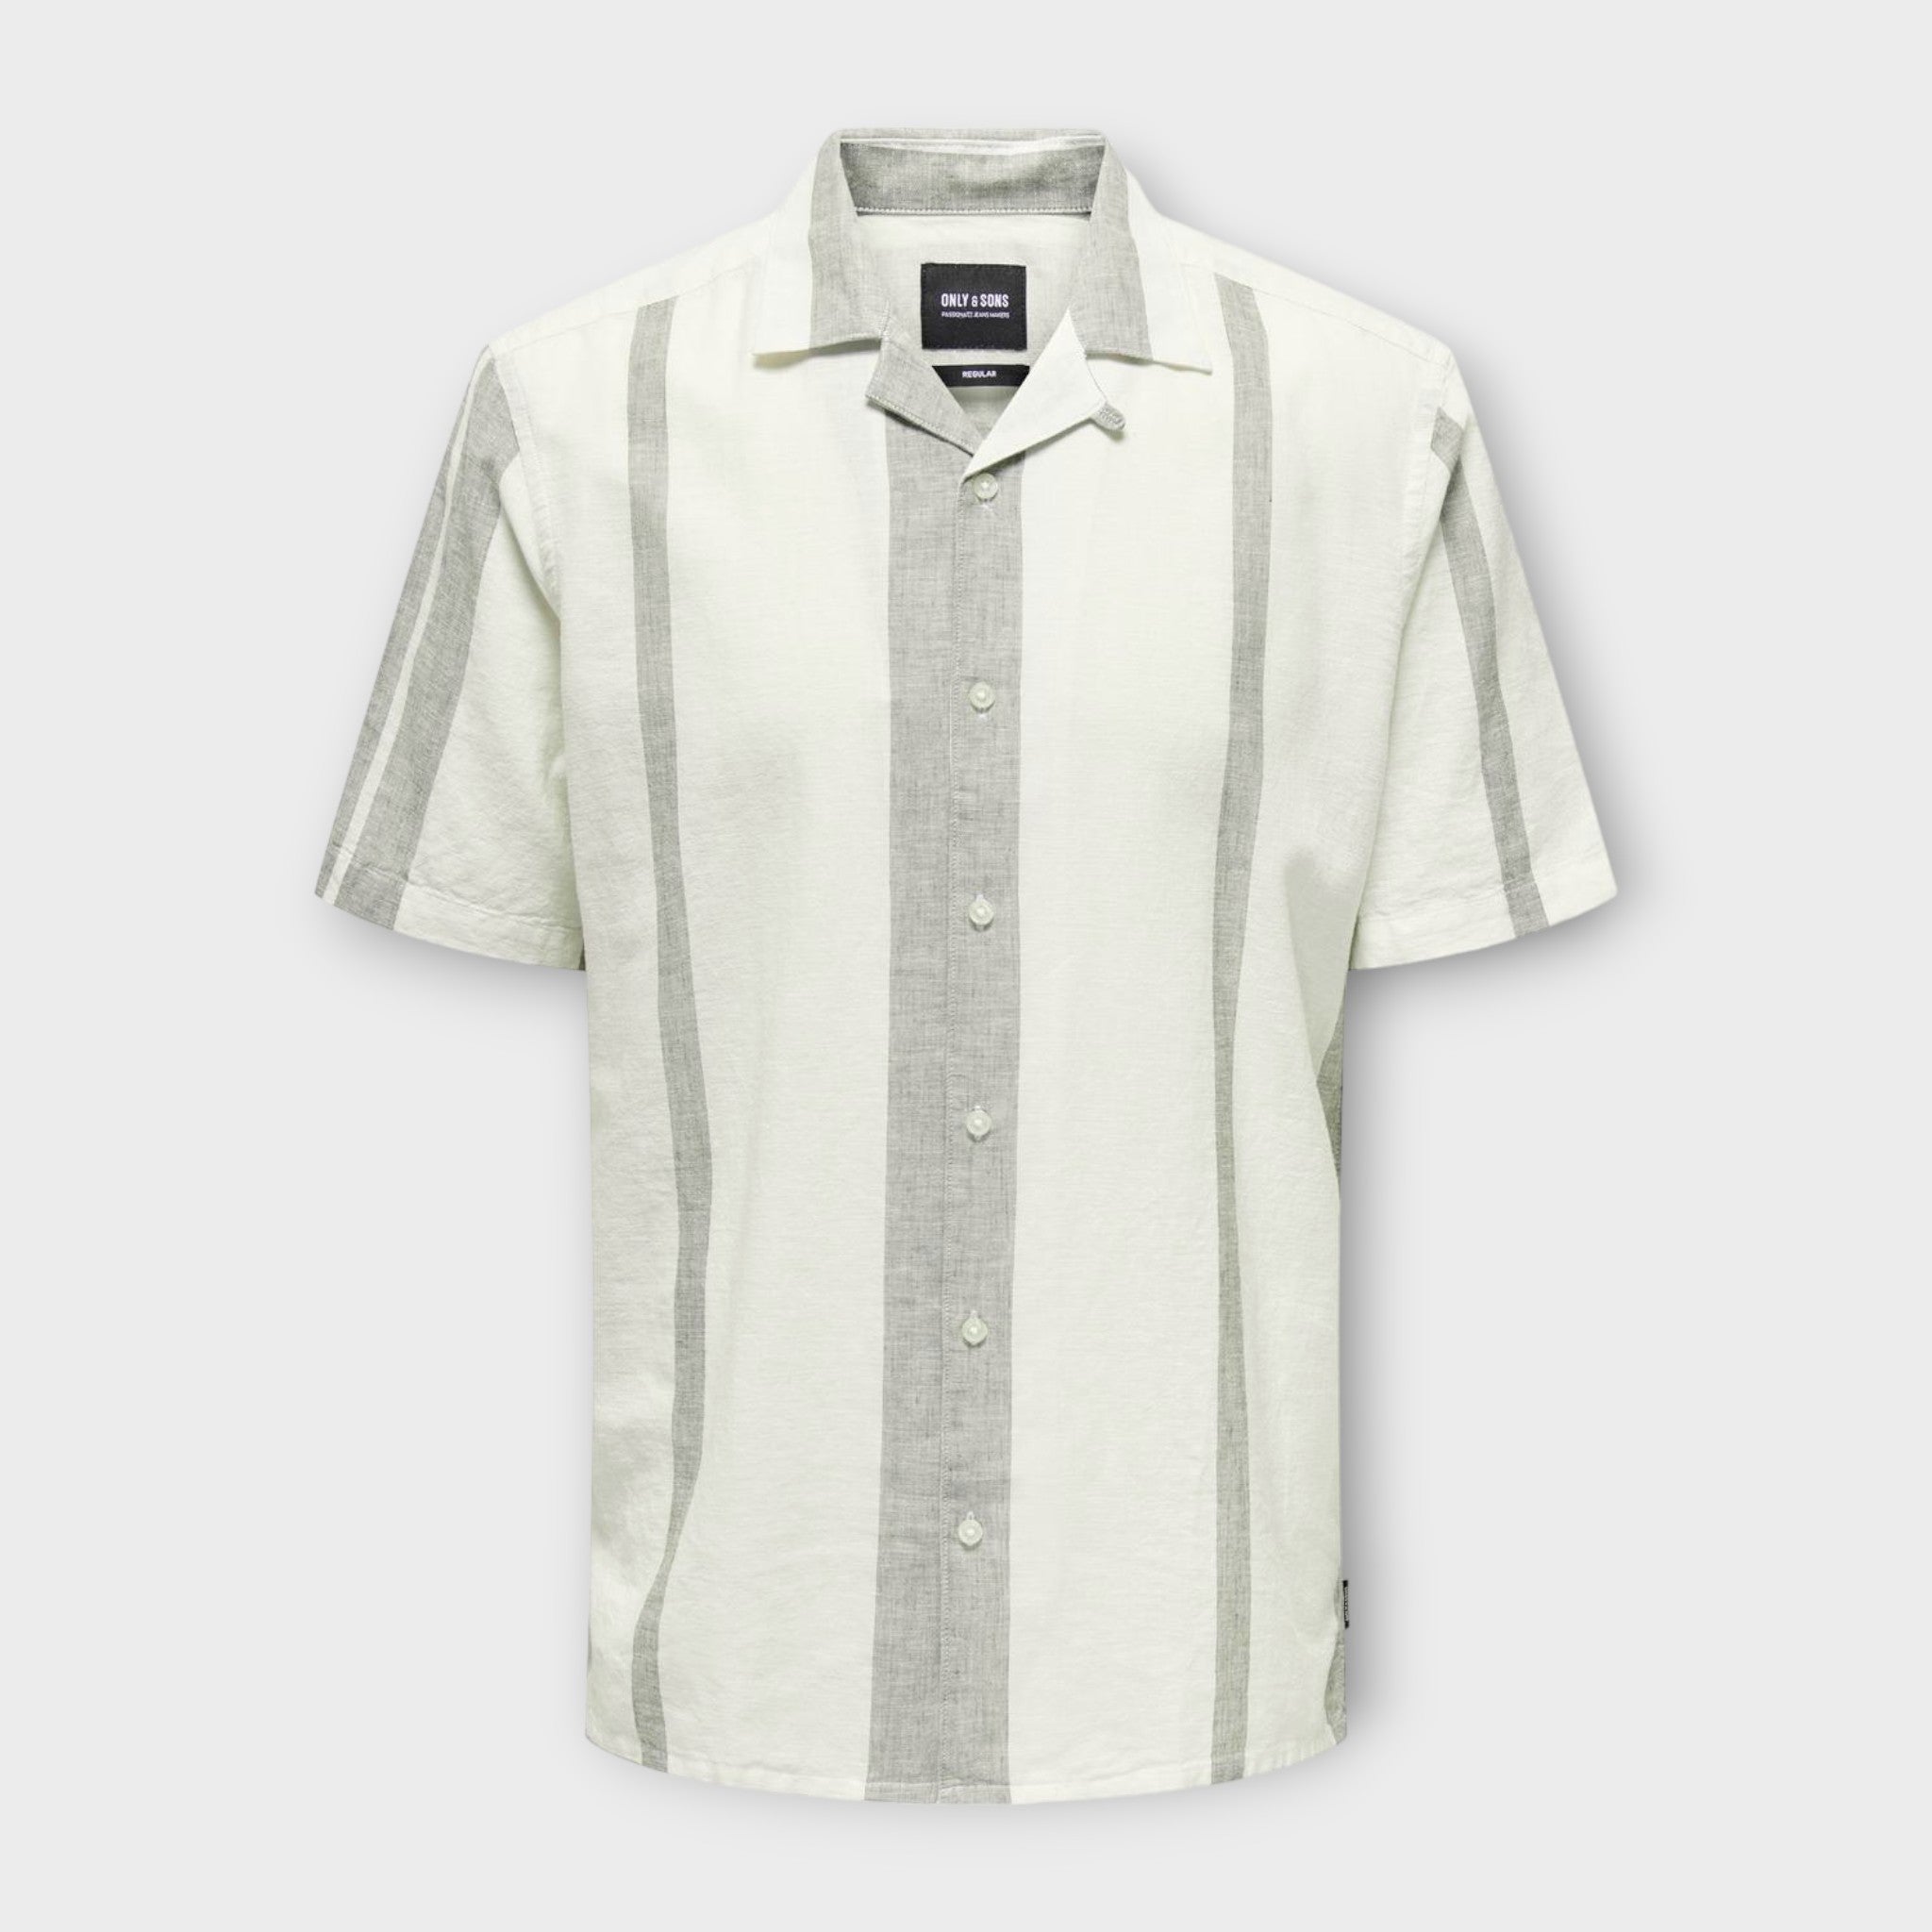 Only And Sons Caiden Stripe Linen Resort Shirt Dusty Olive. Lækker kortærmet råhvid stribet hørskjorte med Cuba Krave. Her set forfra.